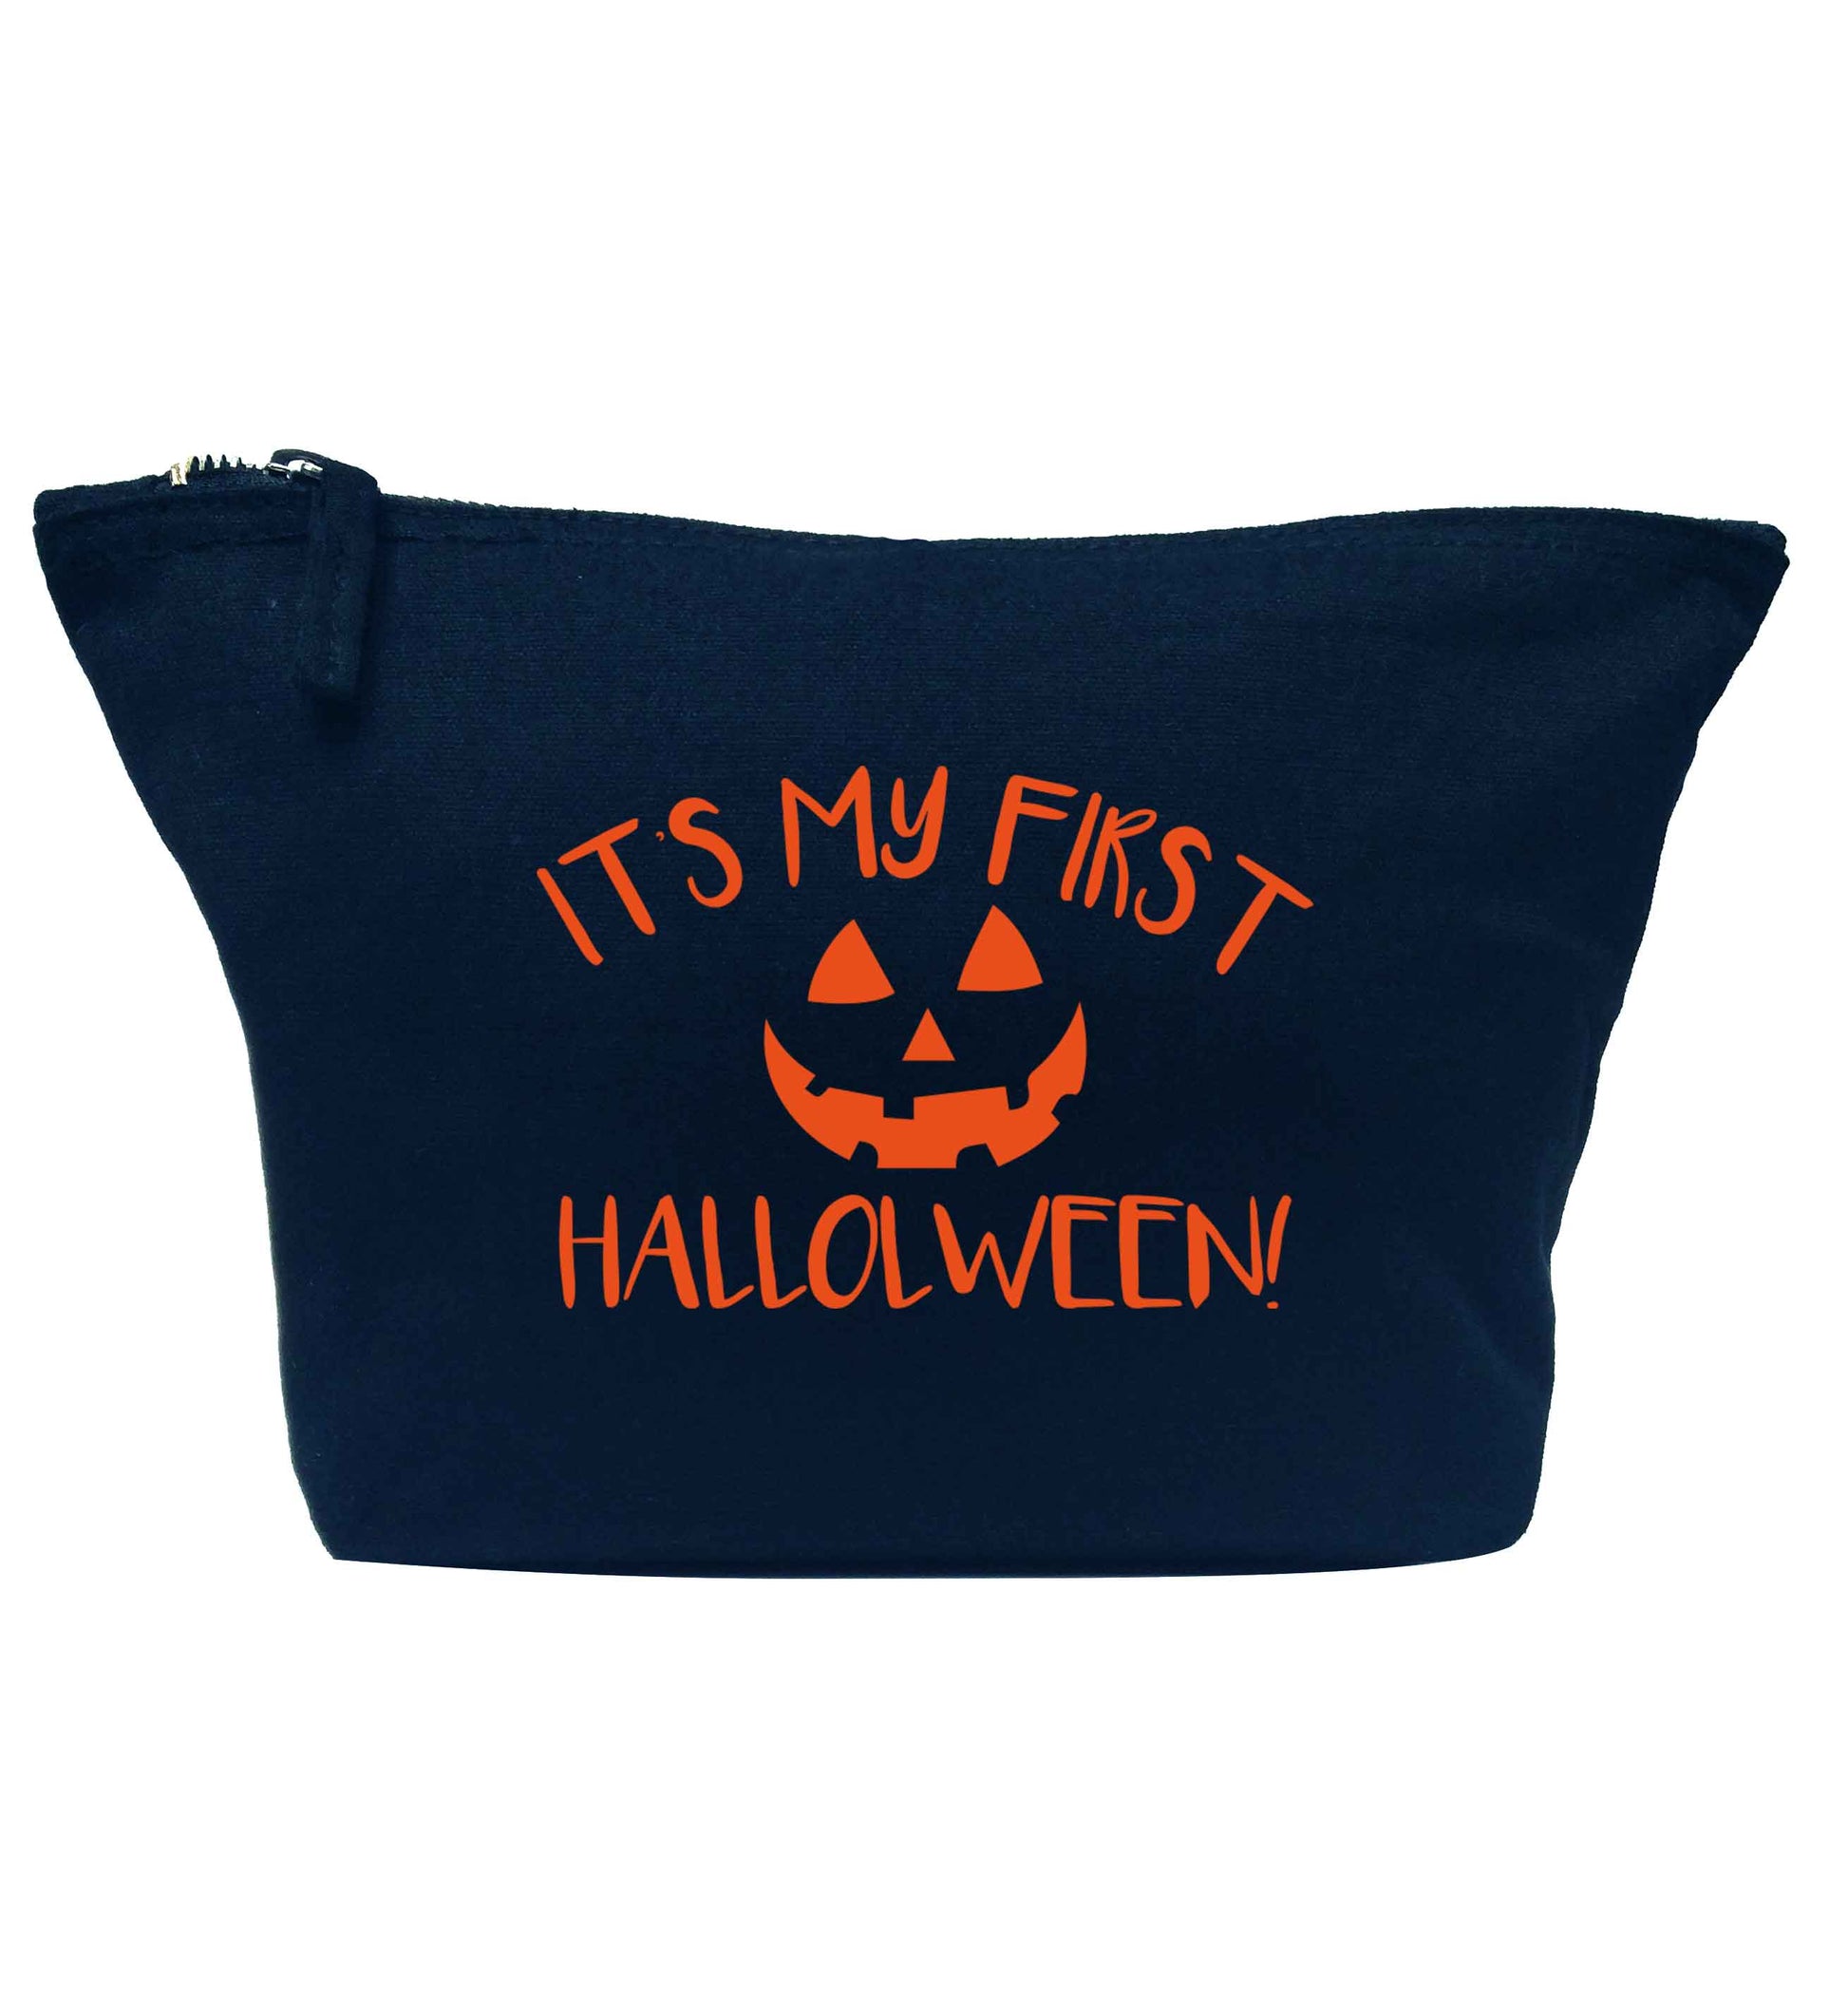 My 1st Halloween Pumpkin navy makeup bag